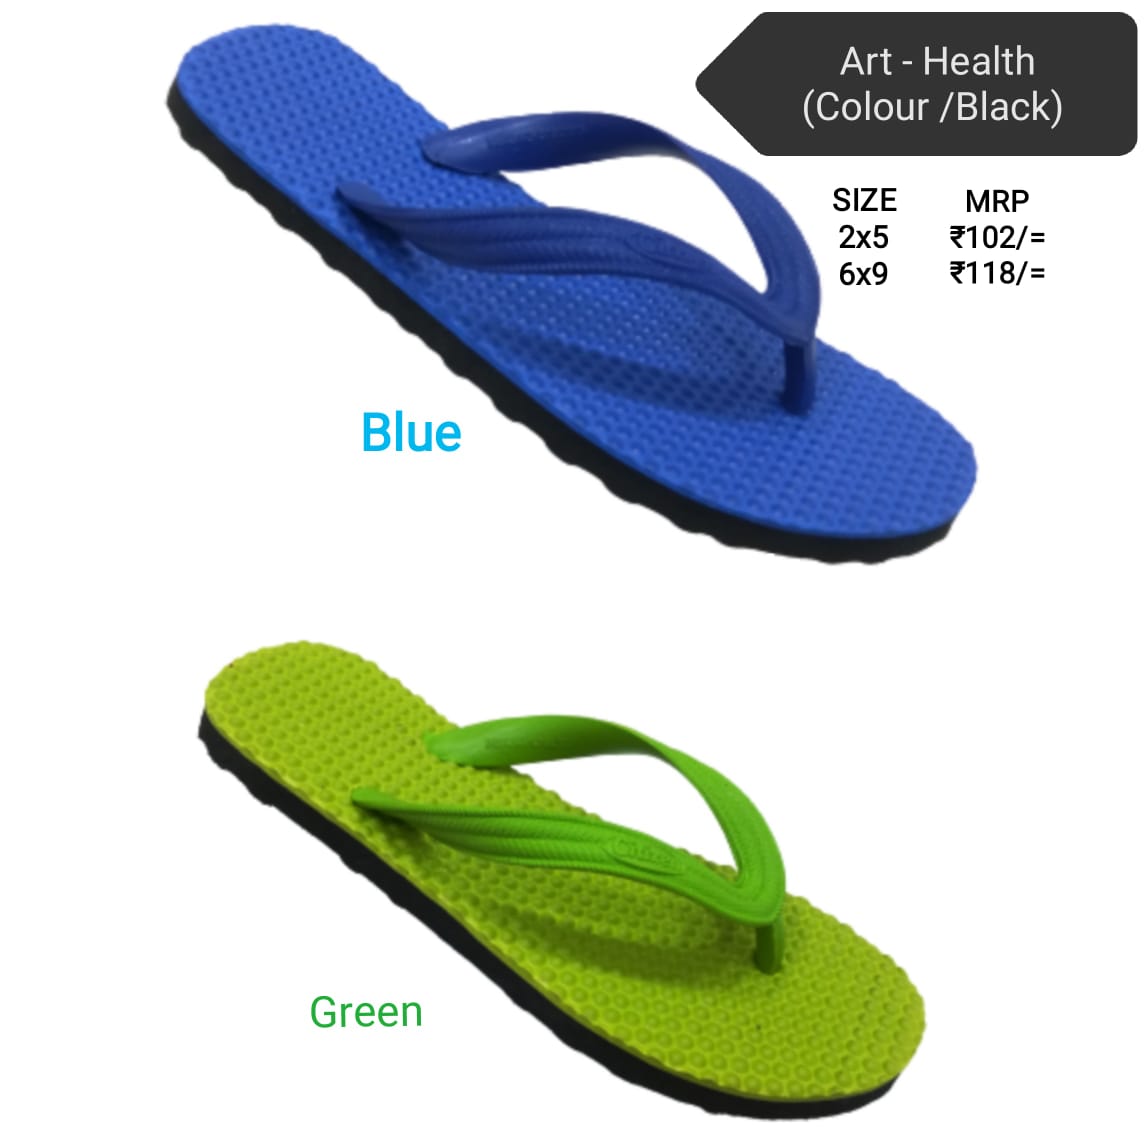 Citizen gents hawai - health colour / black flip flop